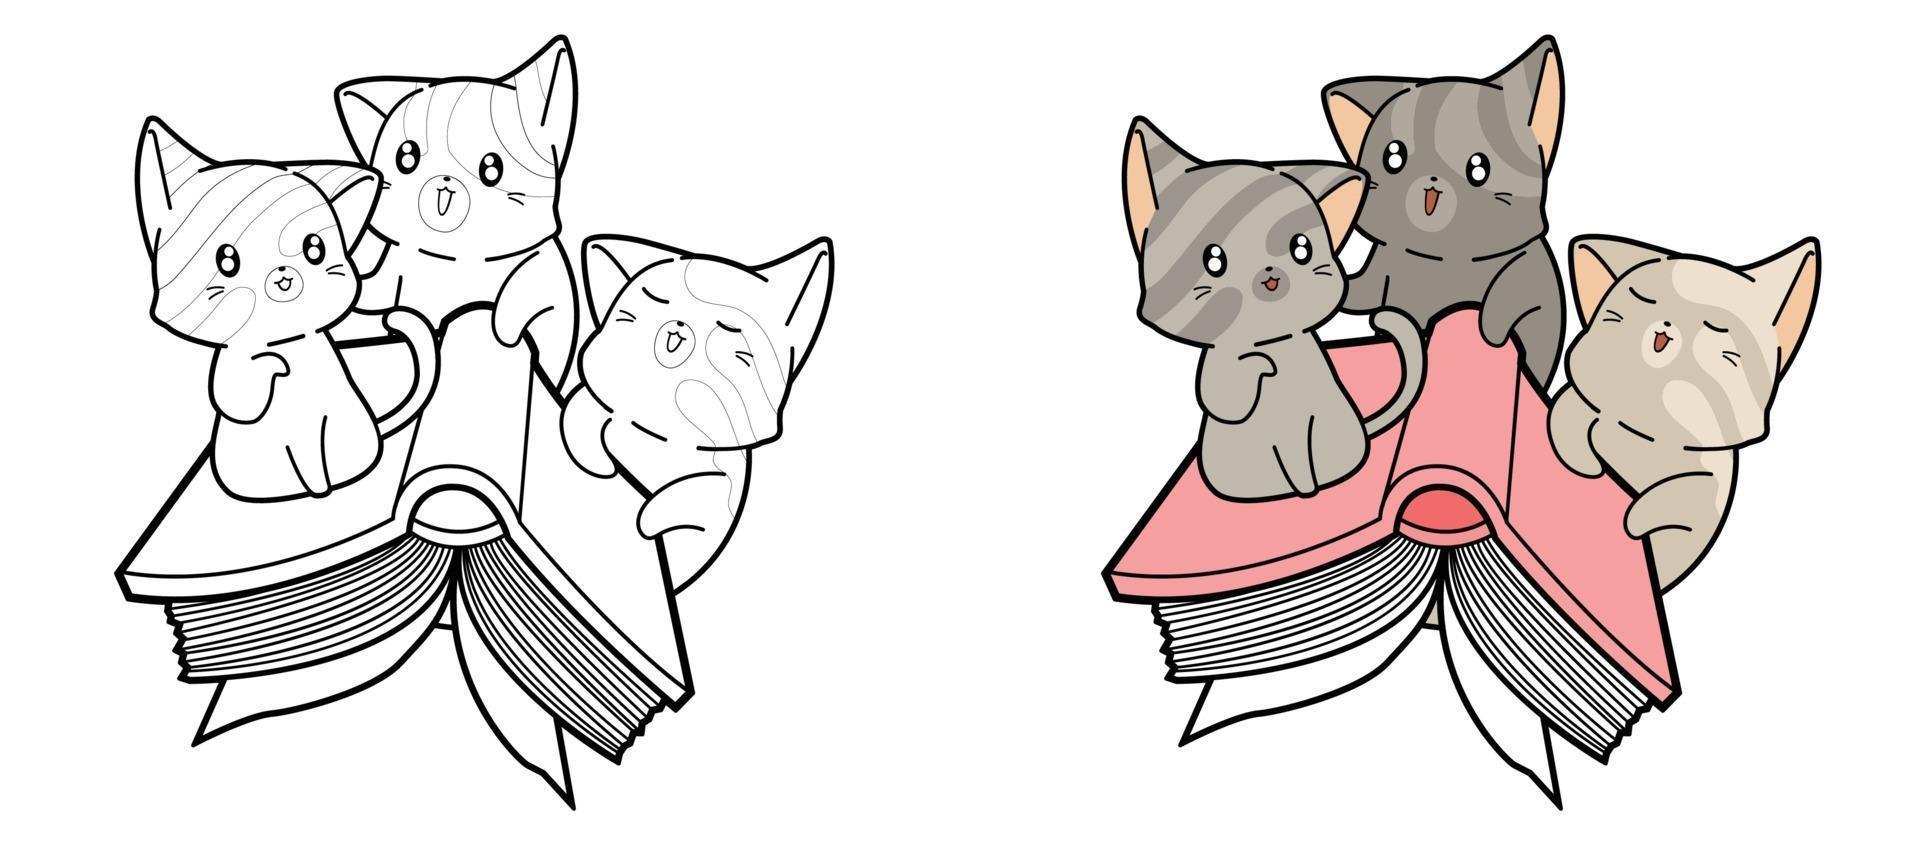 simpatici gatti volano con una pagina da colorare per bambini vettore